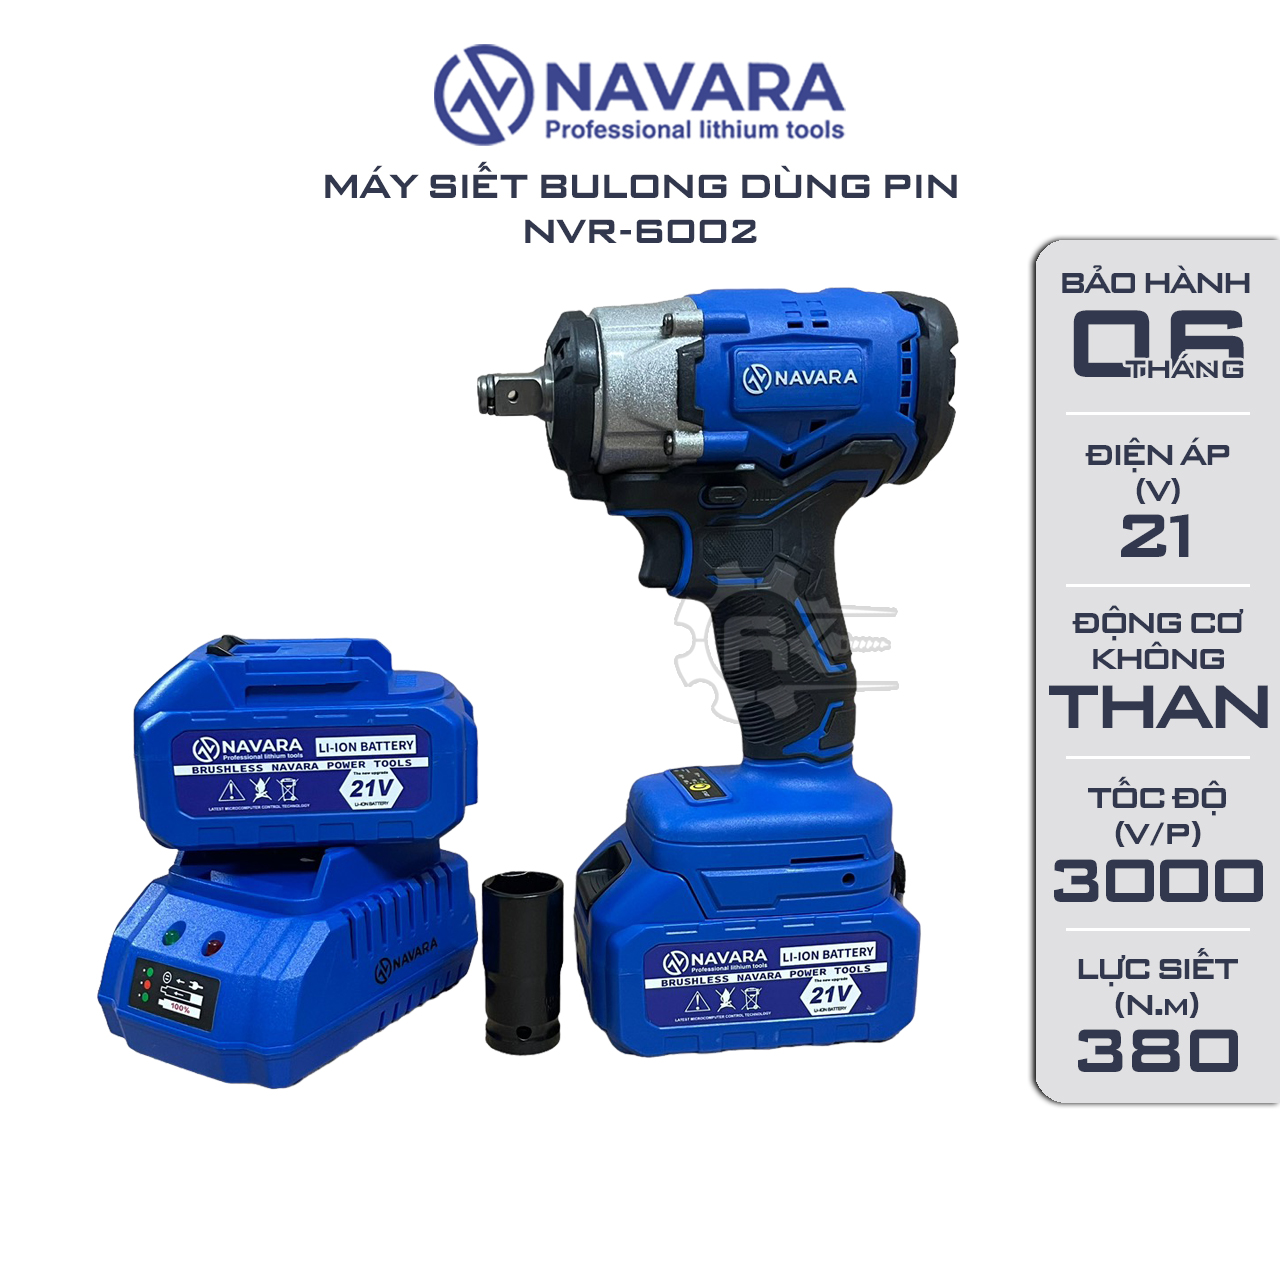 Máy siết bulong pin Navara 6002, Động cơ bền bỉ mạnh mẽ, Lực siết 380Nm